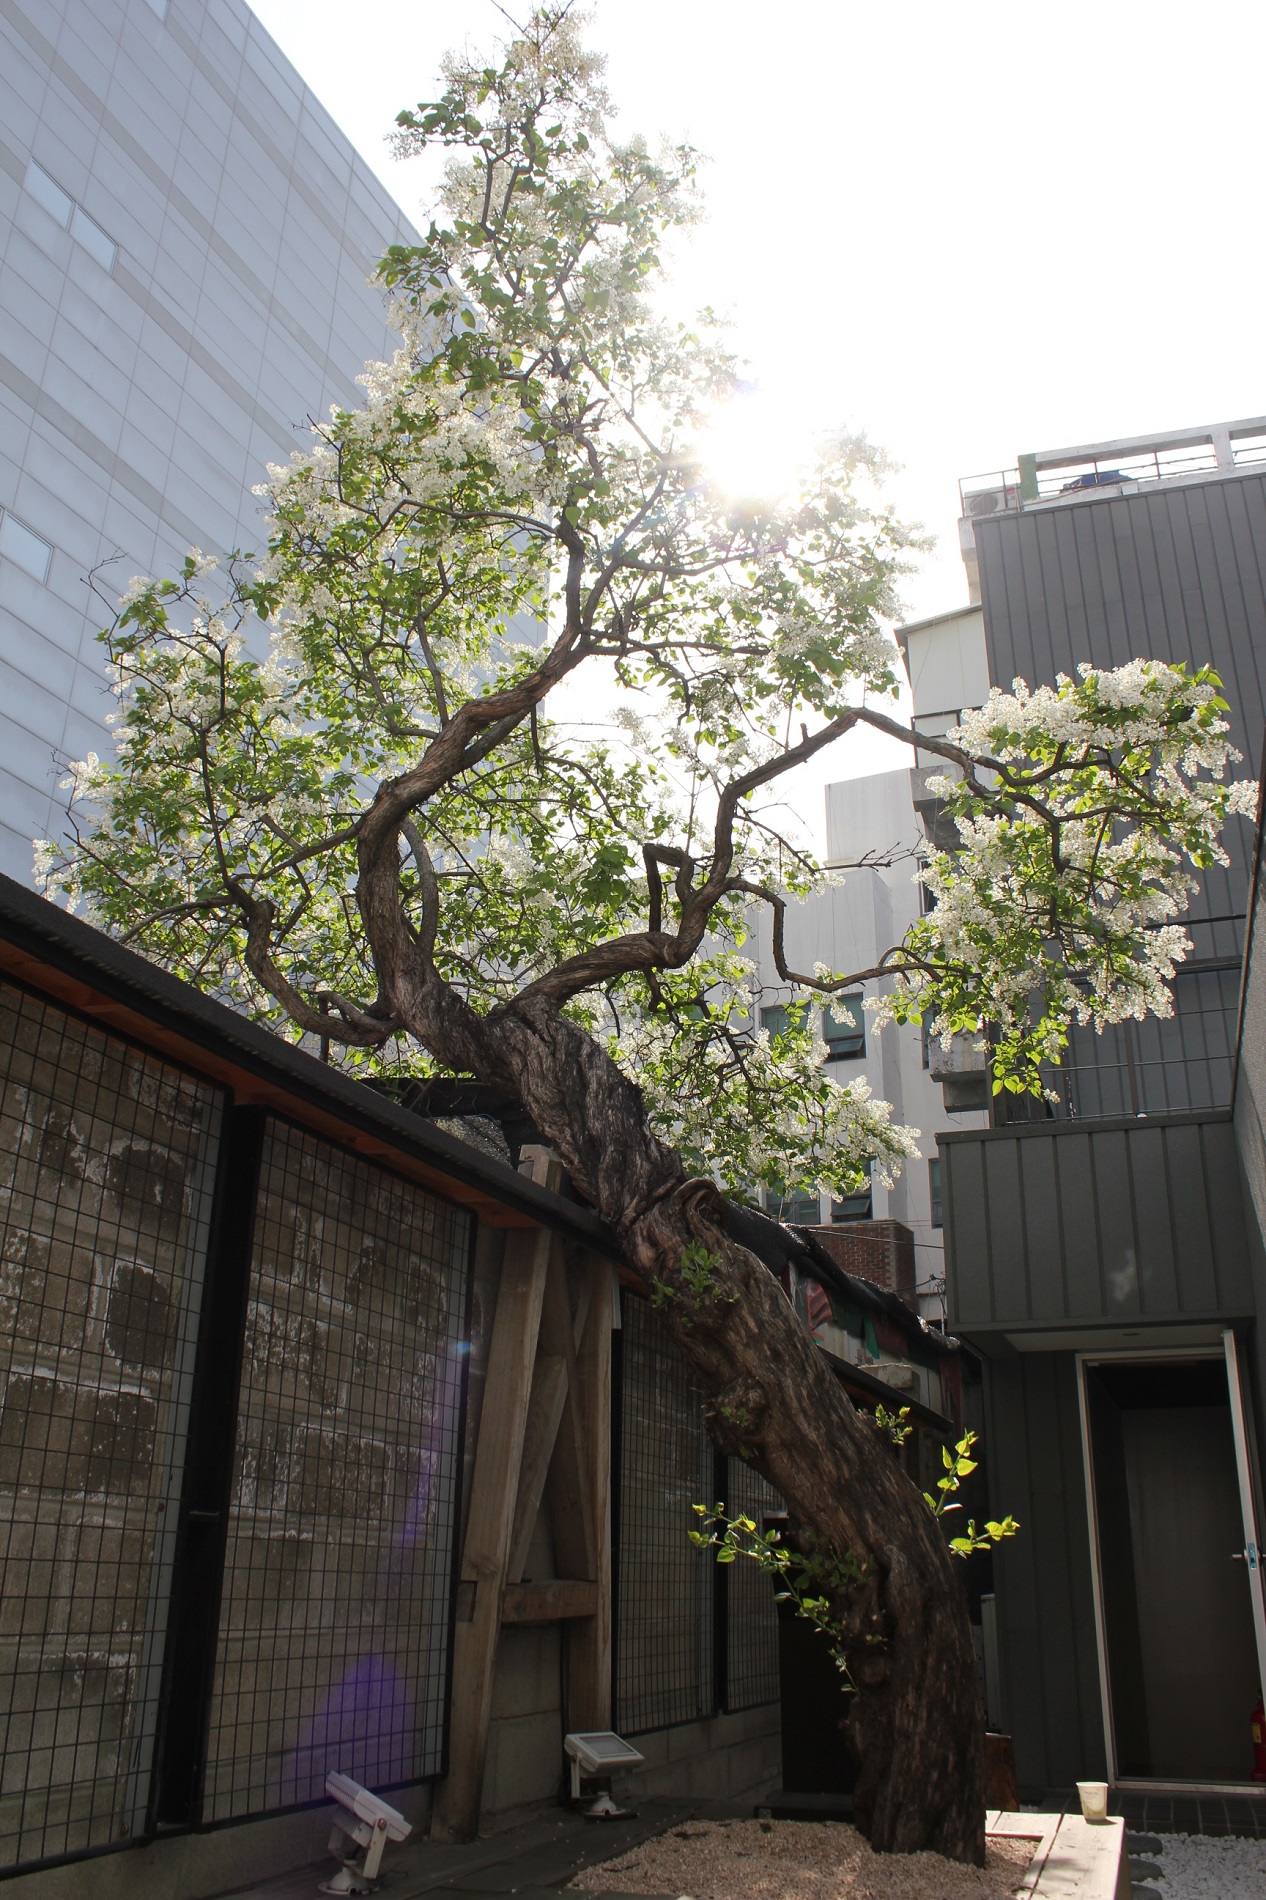 희움일본군‘위안부’역사관 내 1층 안뜰 건립 당시부터 있던 수령 90년 이상의 라일락 나무 ©정신대할머니와함께하는시민모임